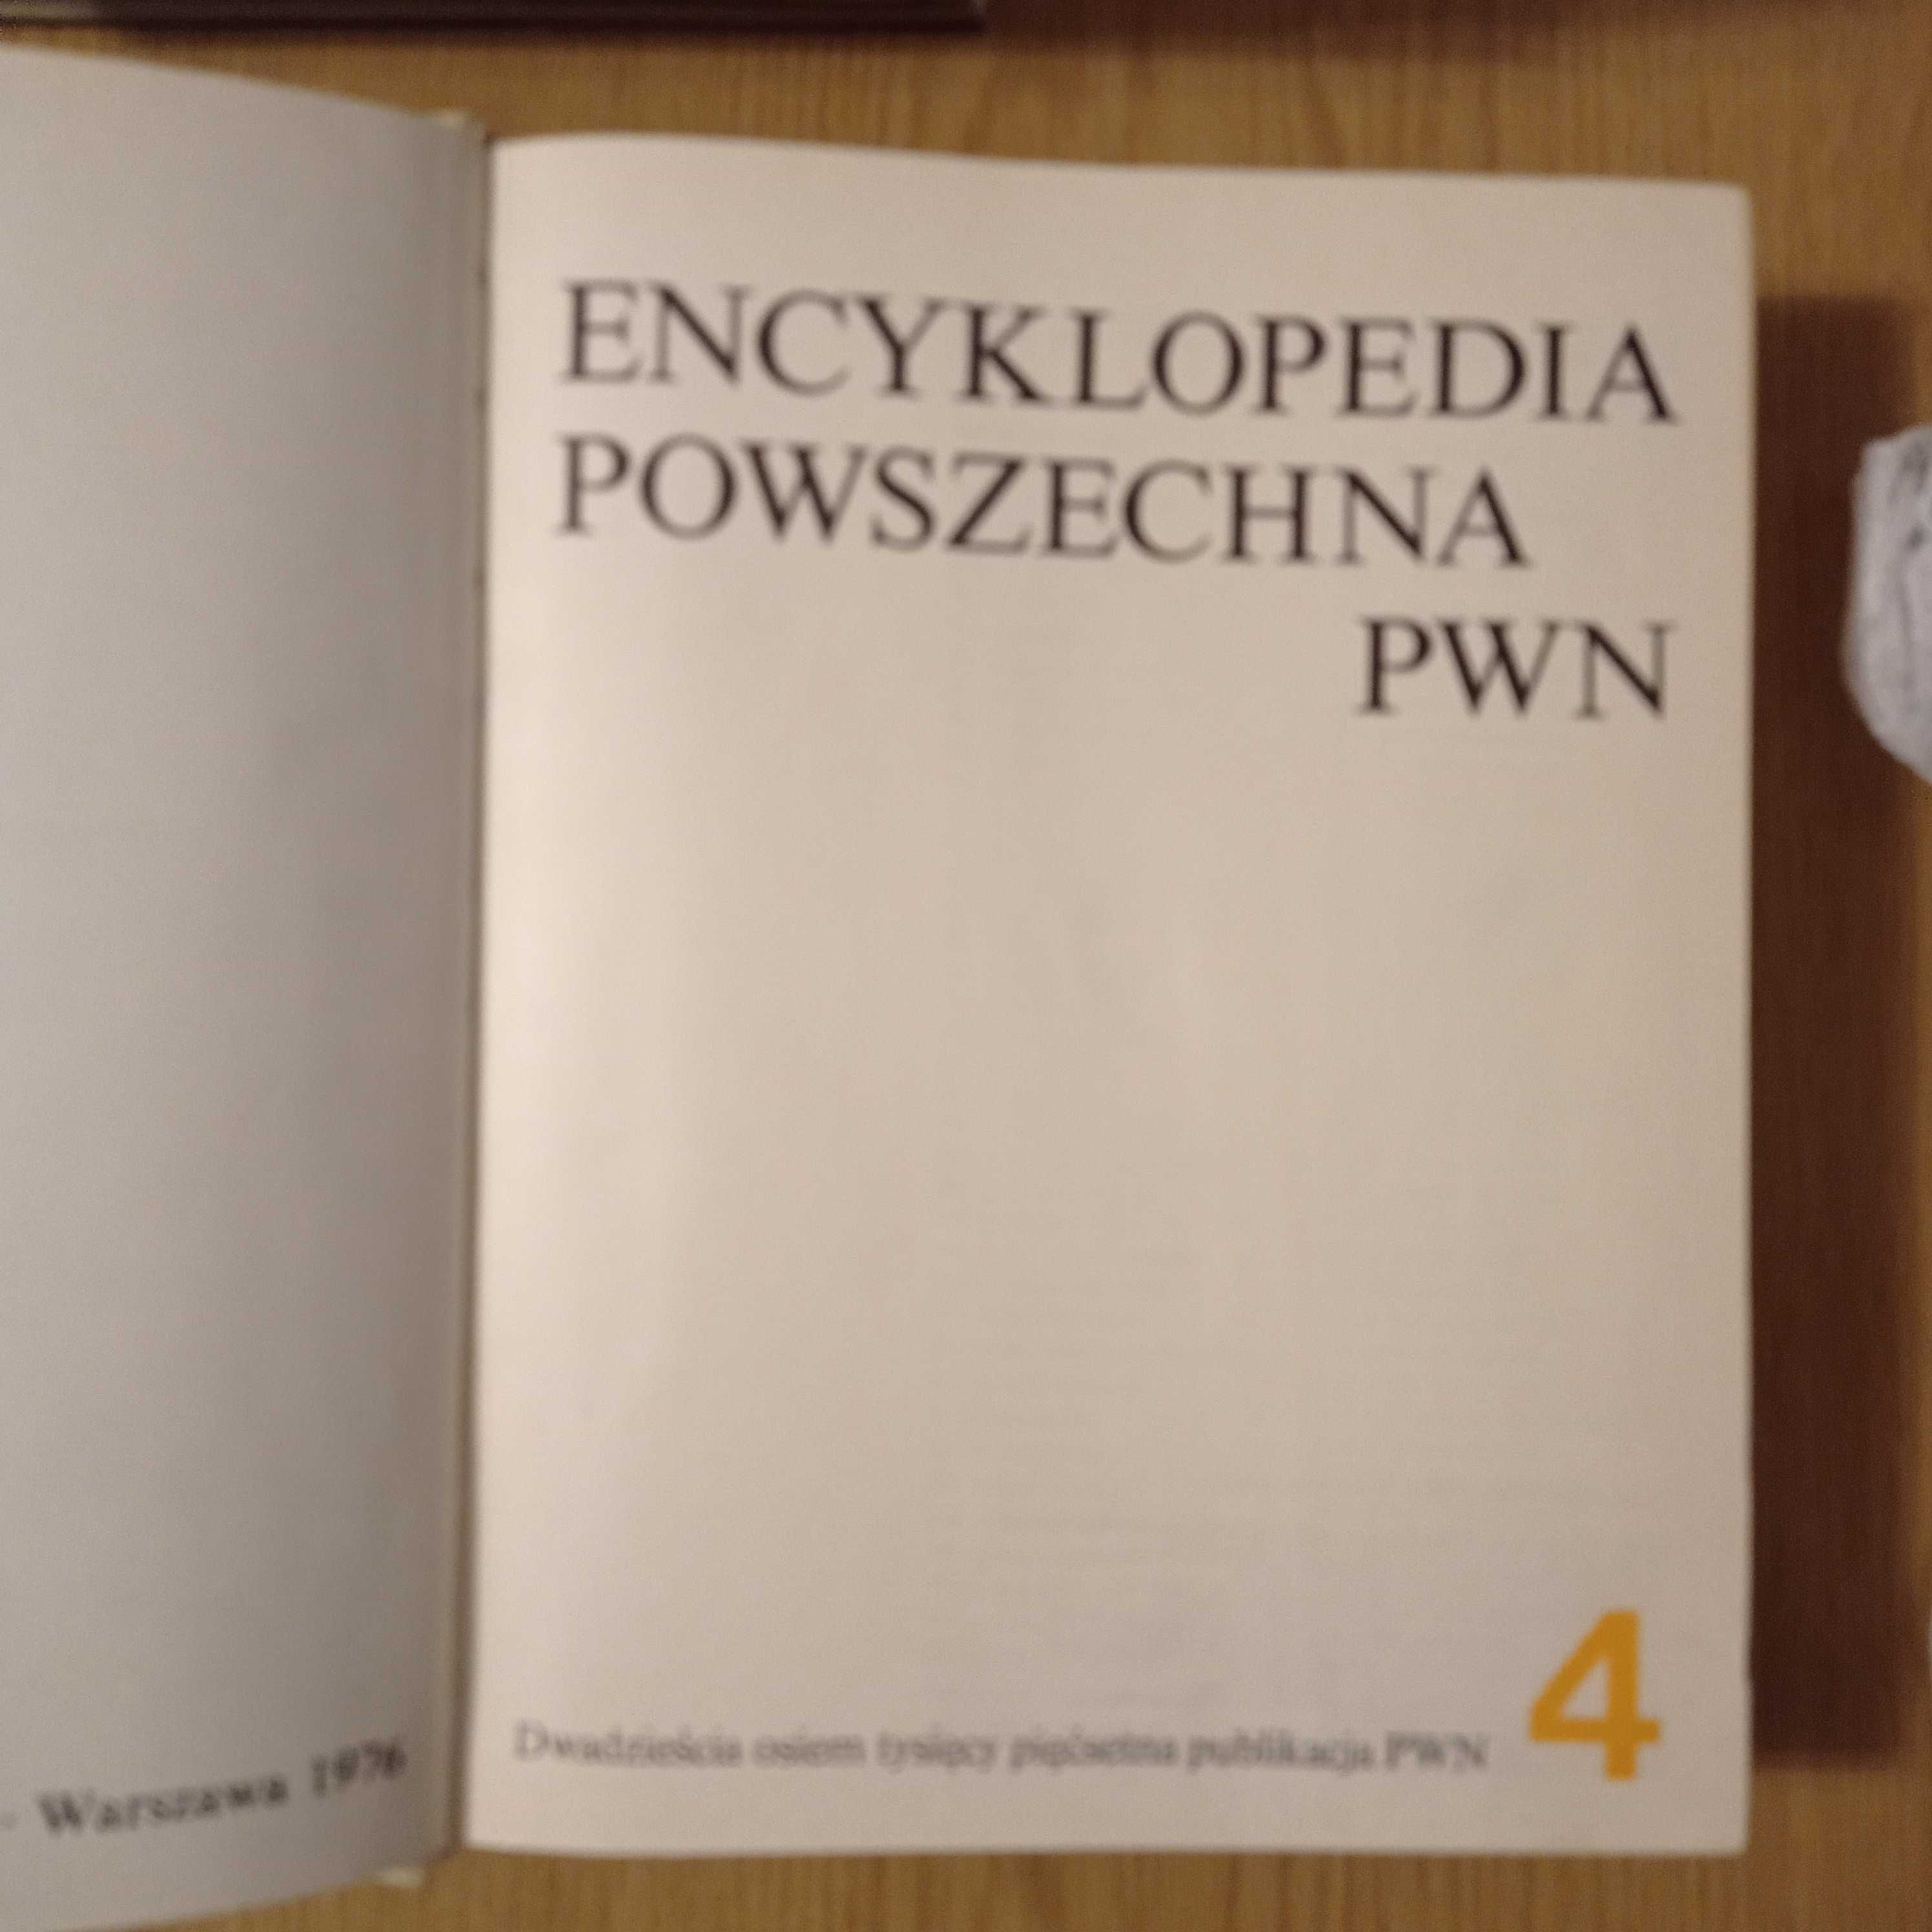 Encyklopedia Powszechna PWN 4 tomy